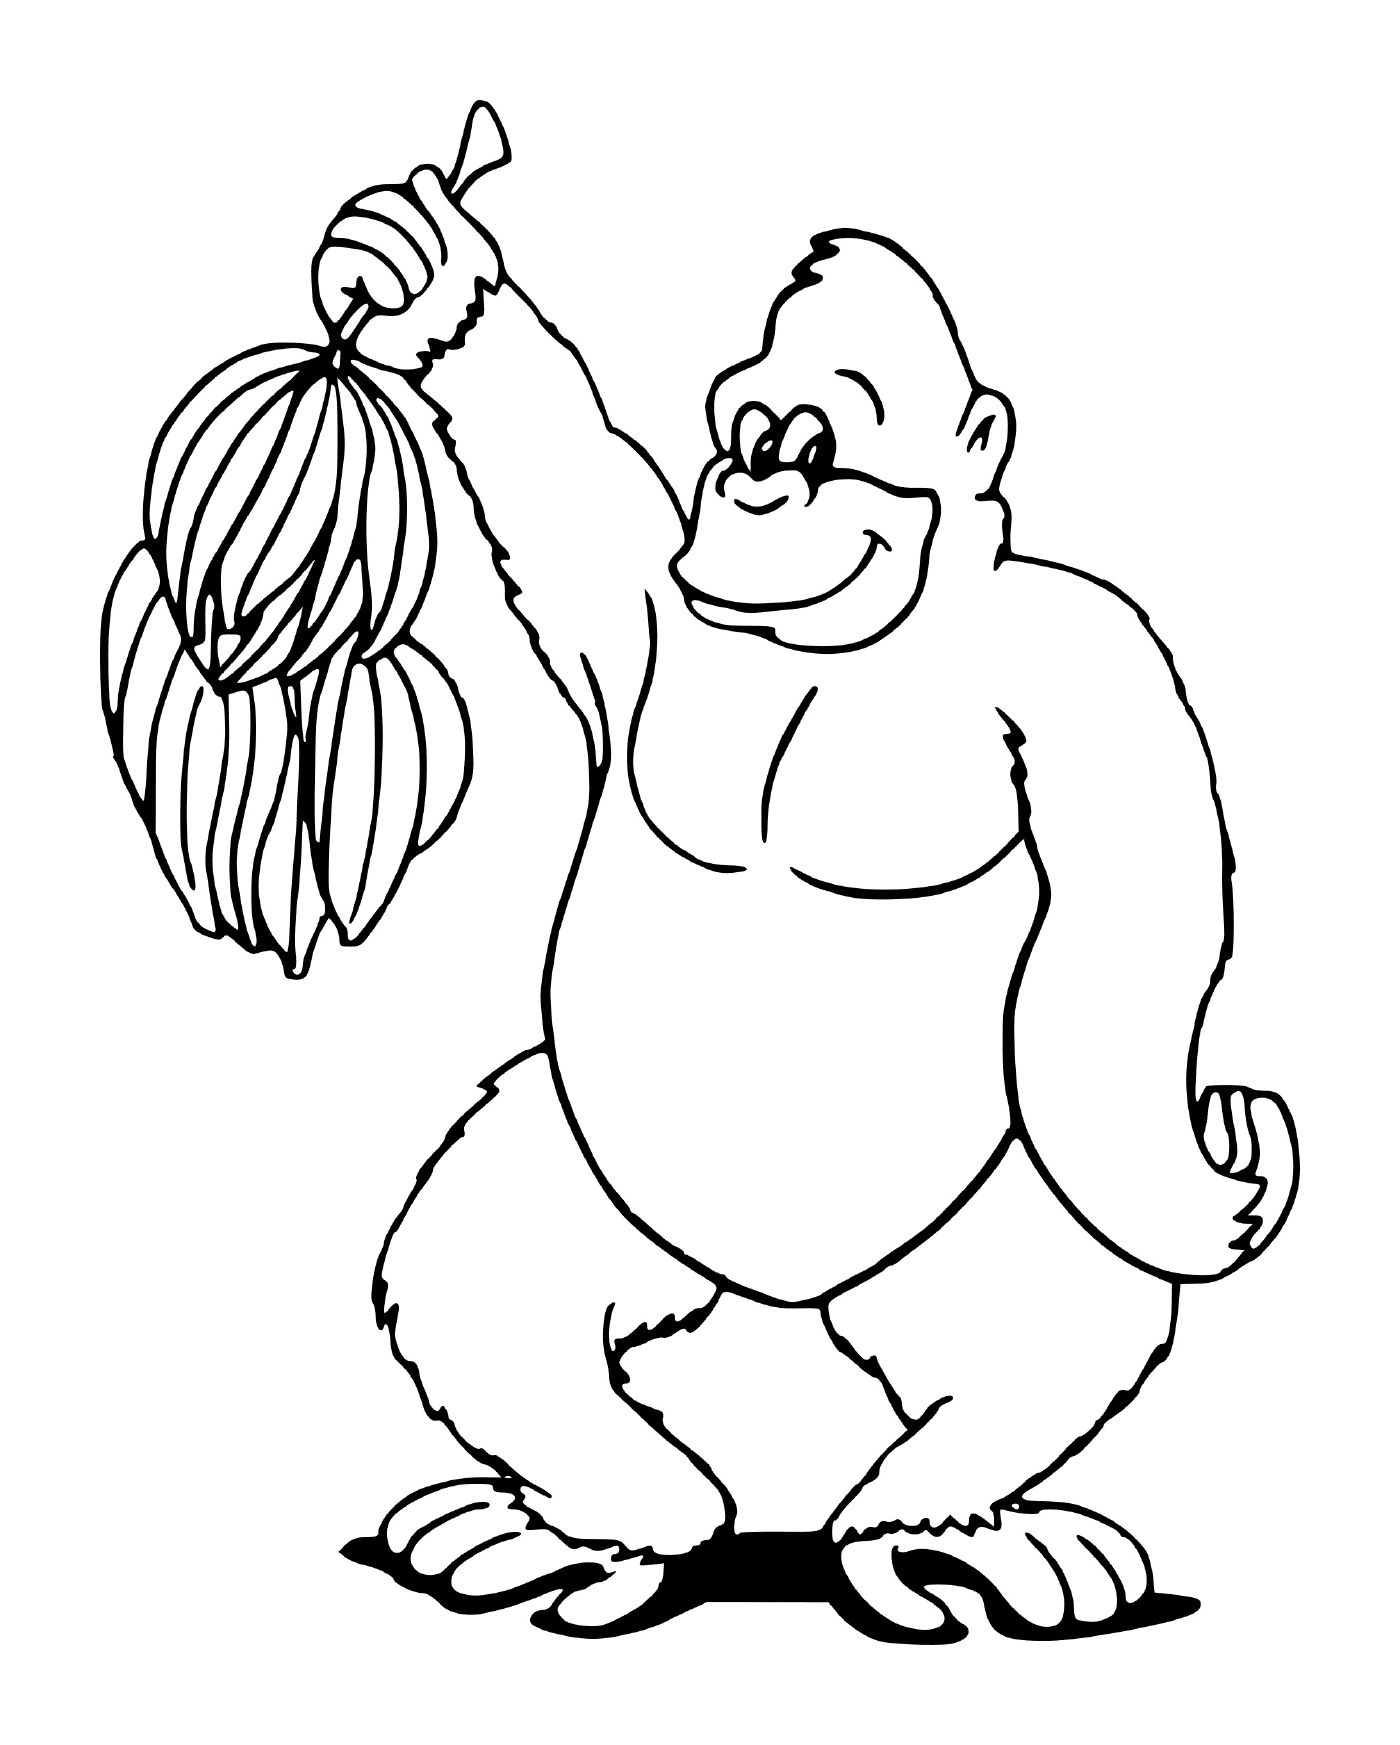  ein Gorilla, der einen Haufen Bananen hält 